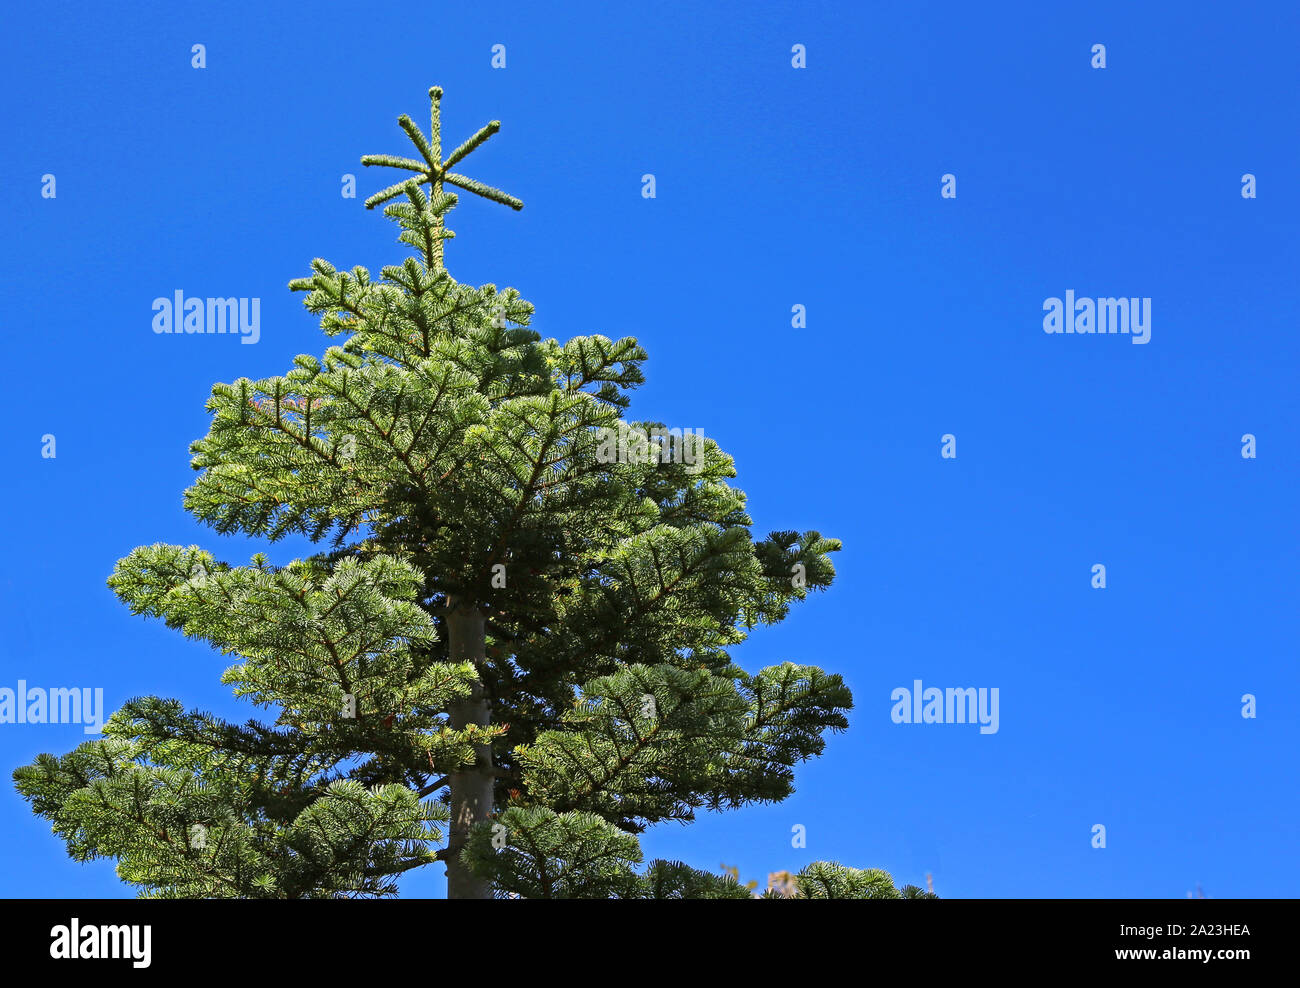 Spruce tree on blue sky Stock Photo